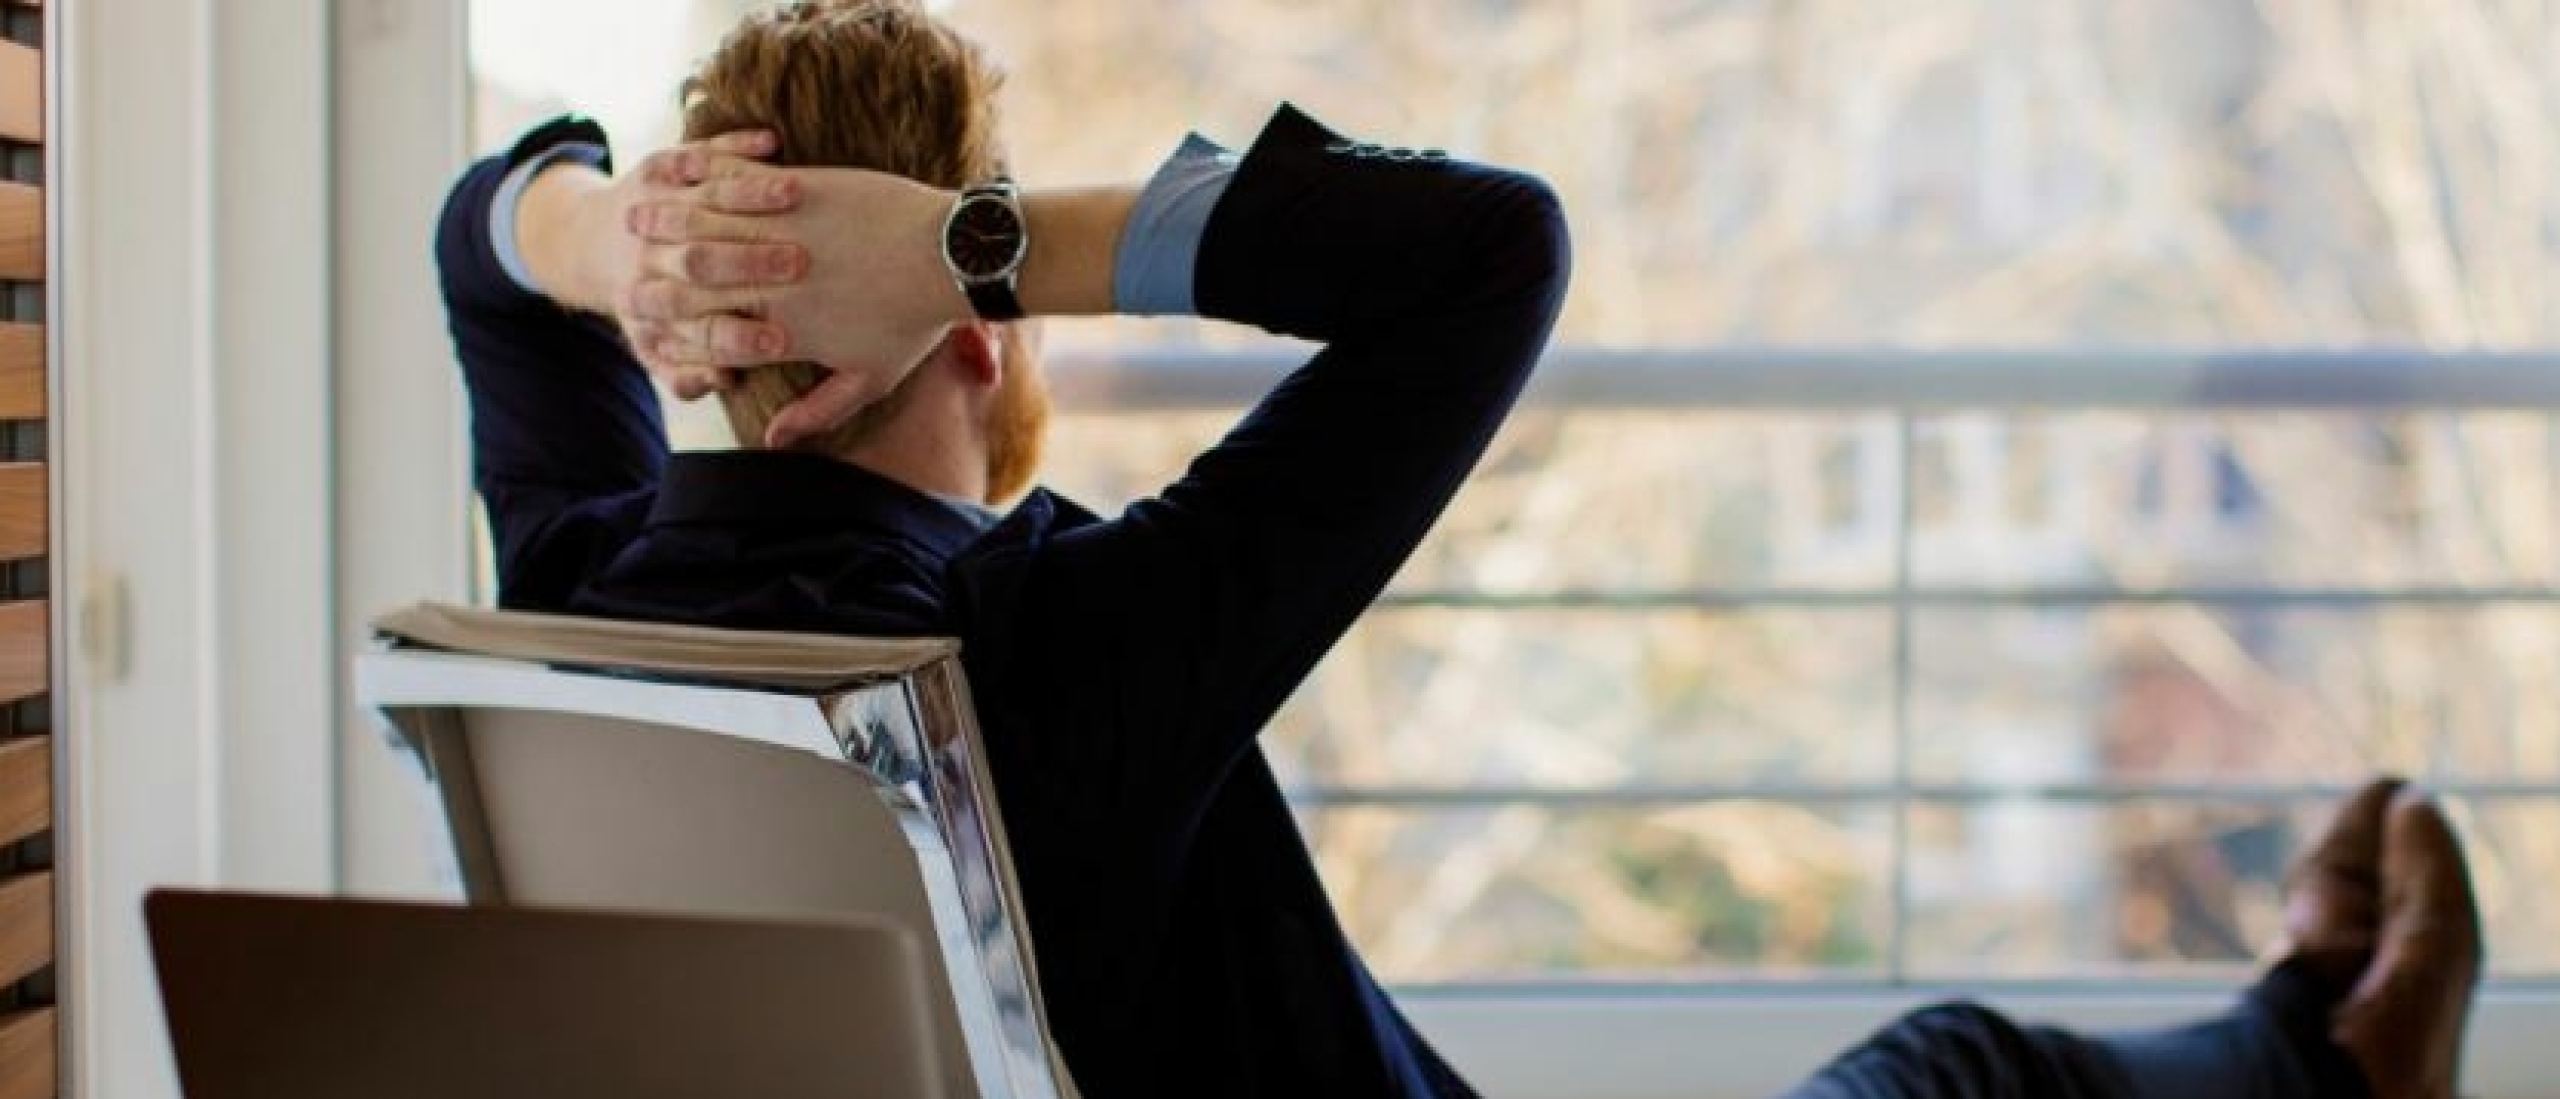 Bij werk gerelateerde stress denk je al snel aan een te hoge werkdruk